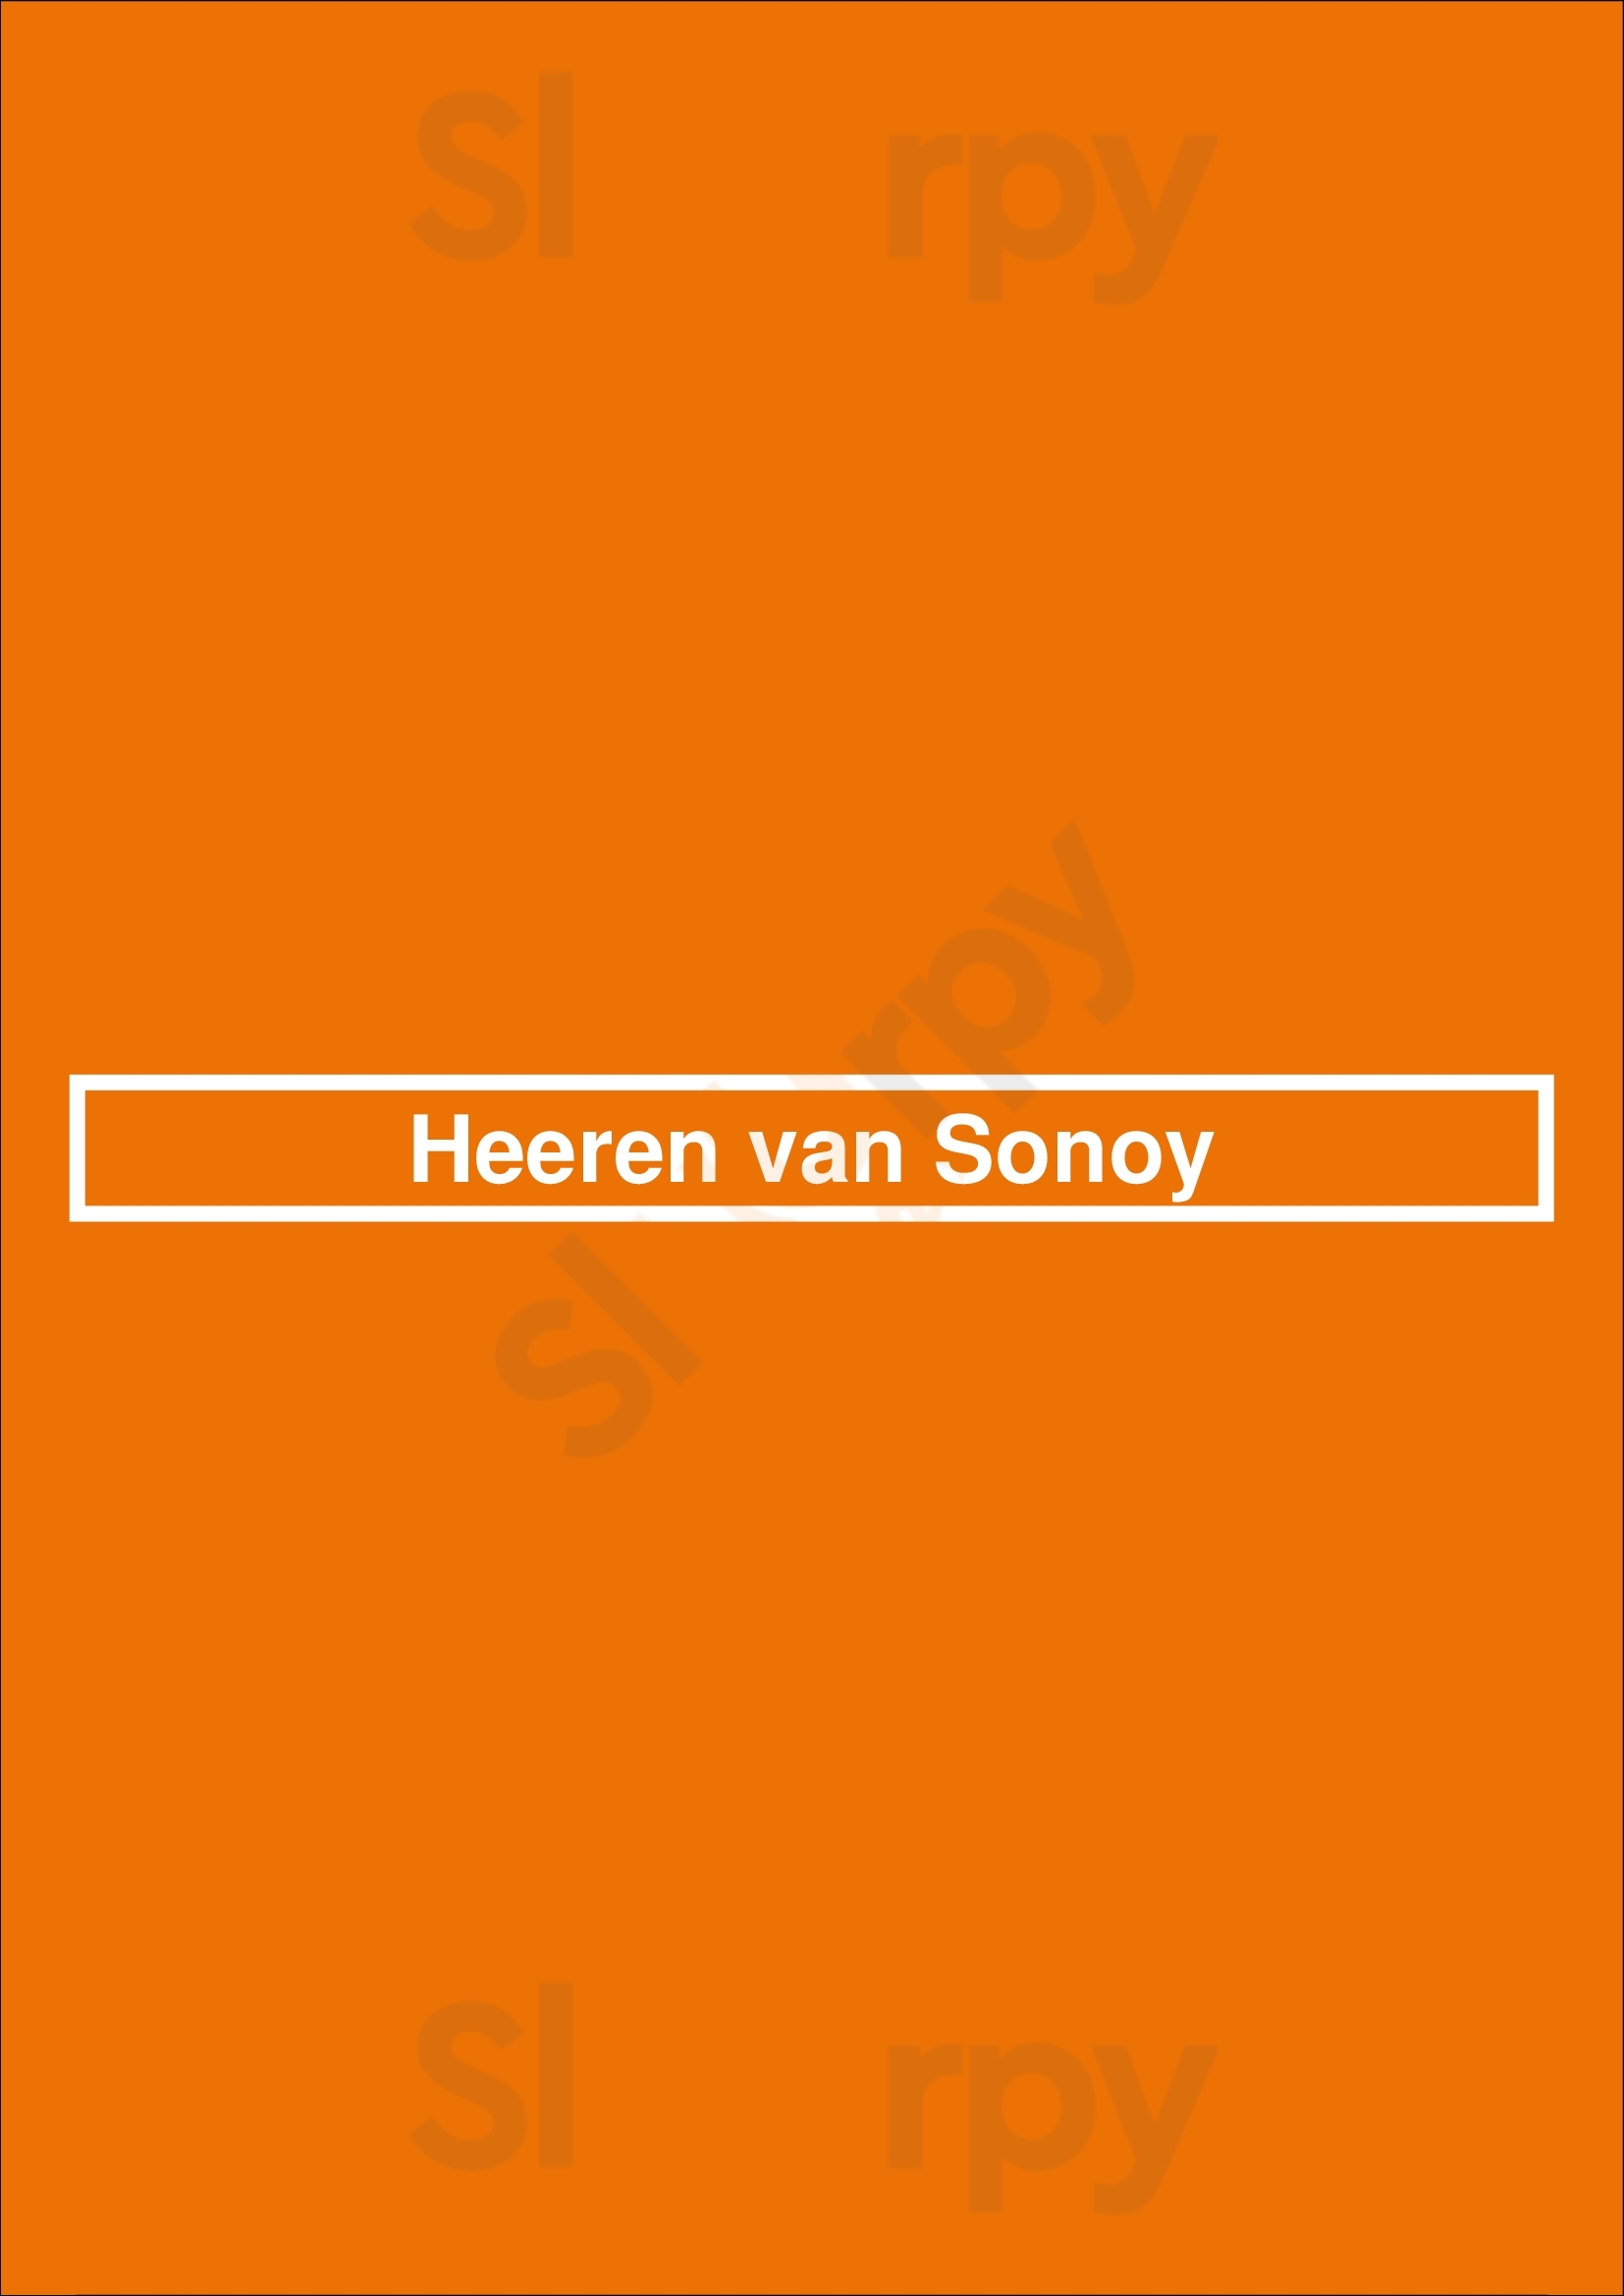 Heeren Van Sonoy Alkmaar Menu - 1